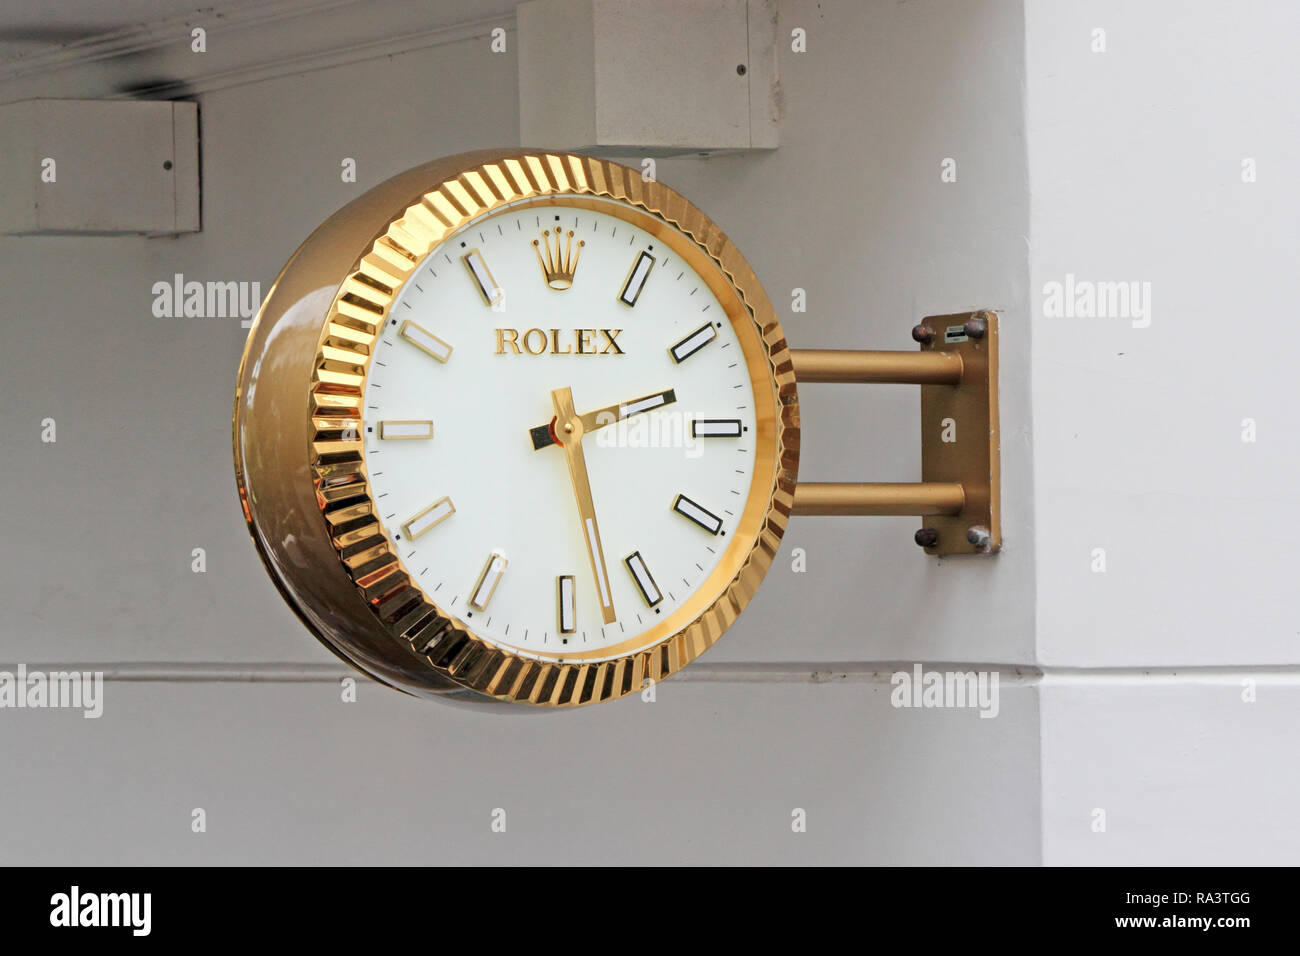 Rolex Wanduhr Stockfotos und -bilder Kaufen - Alamy